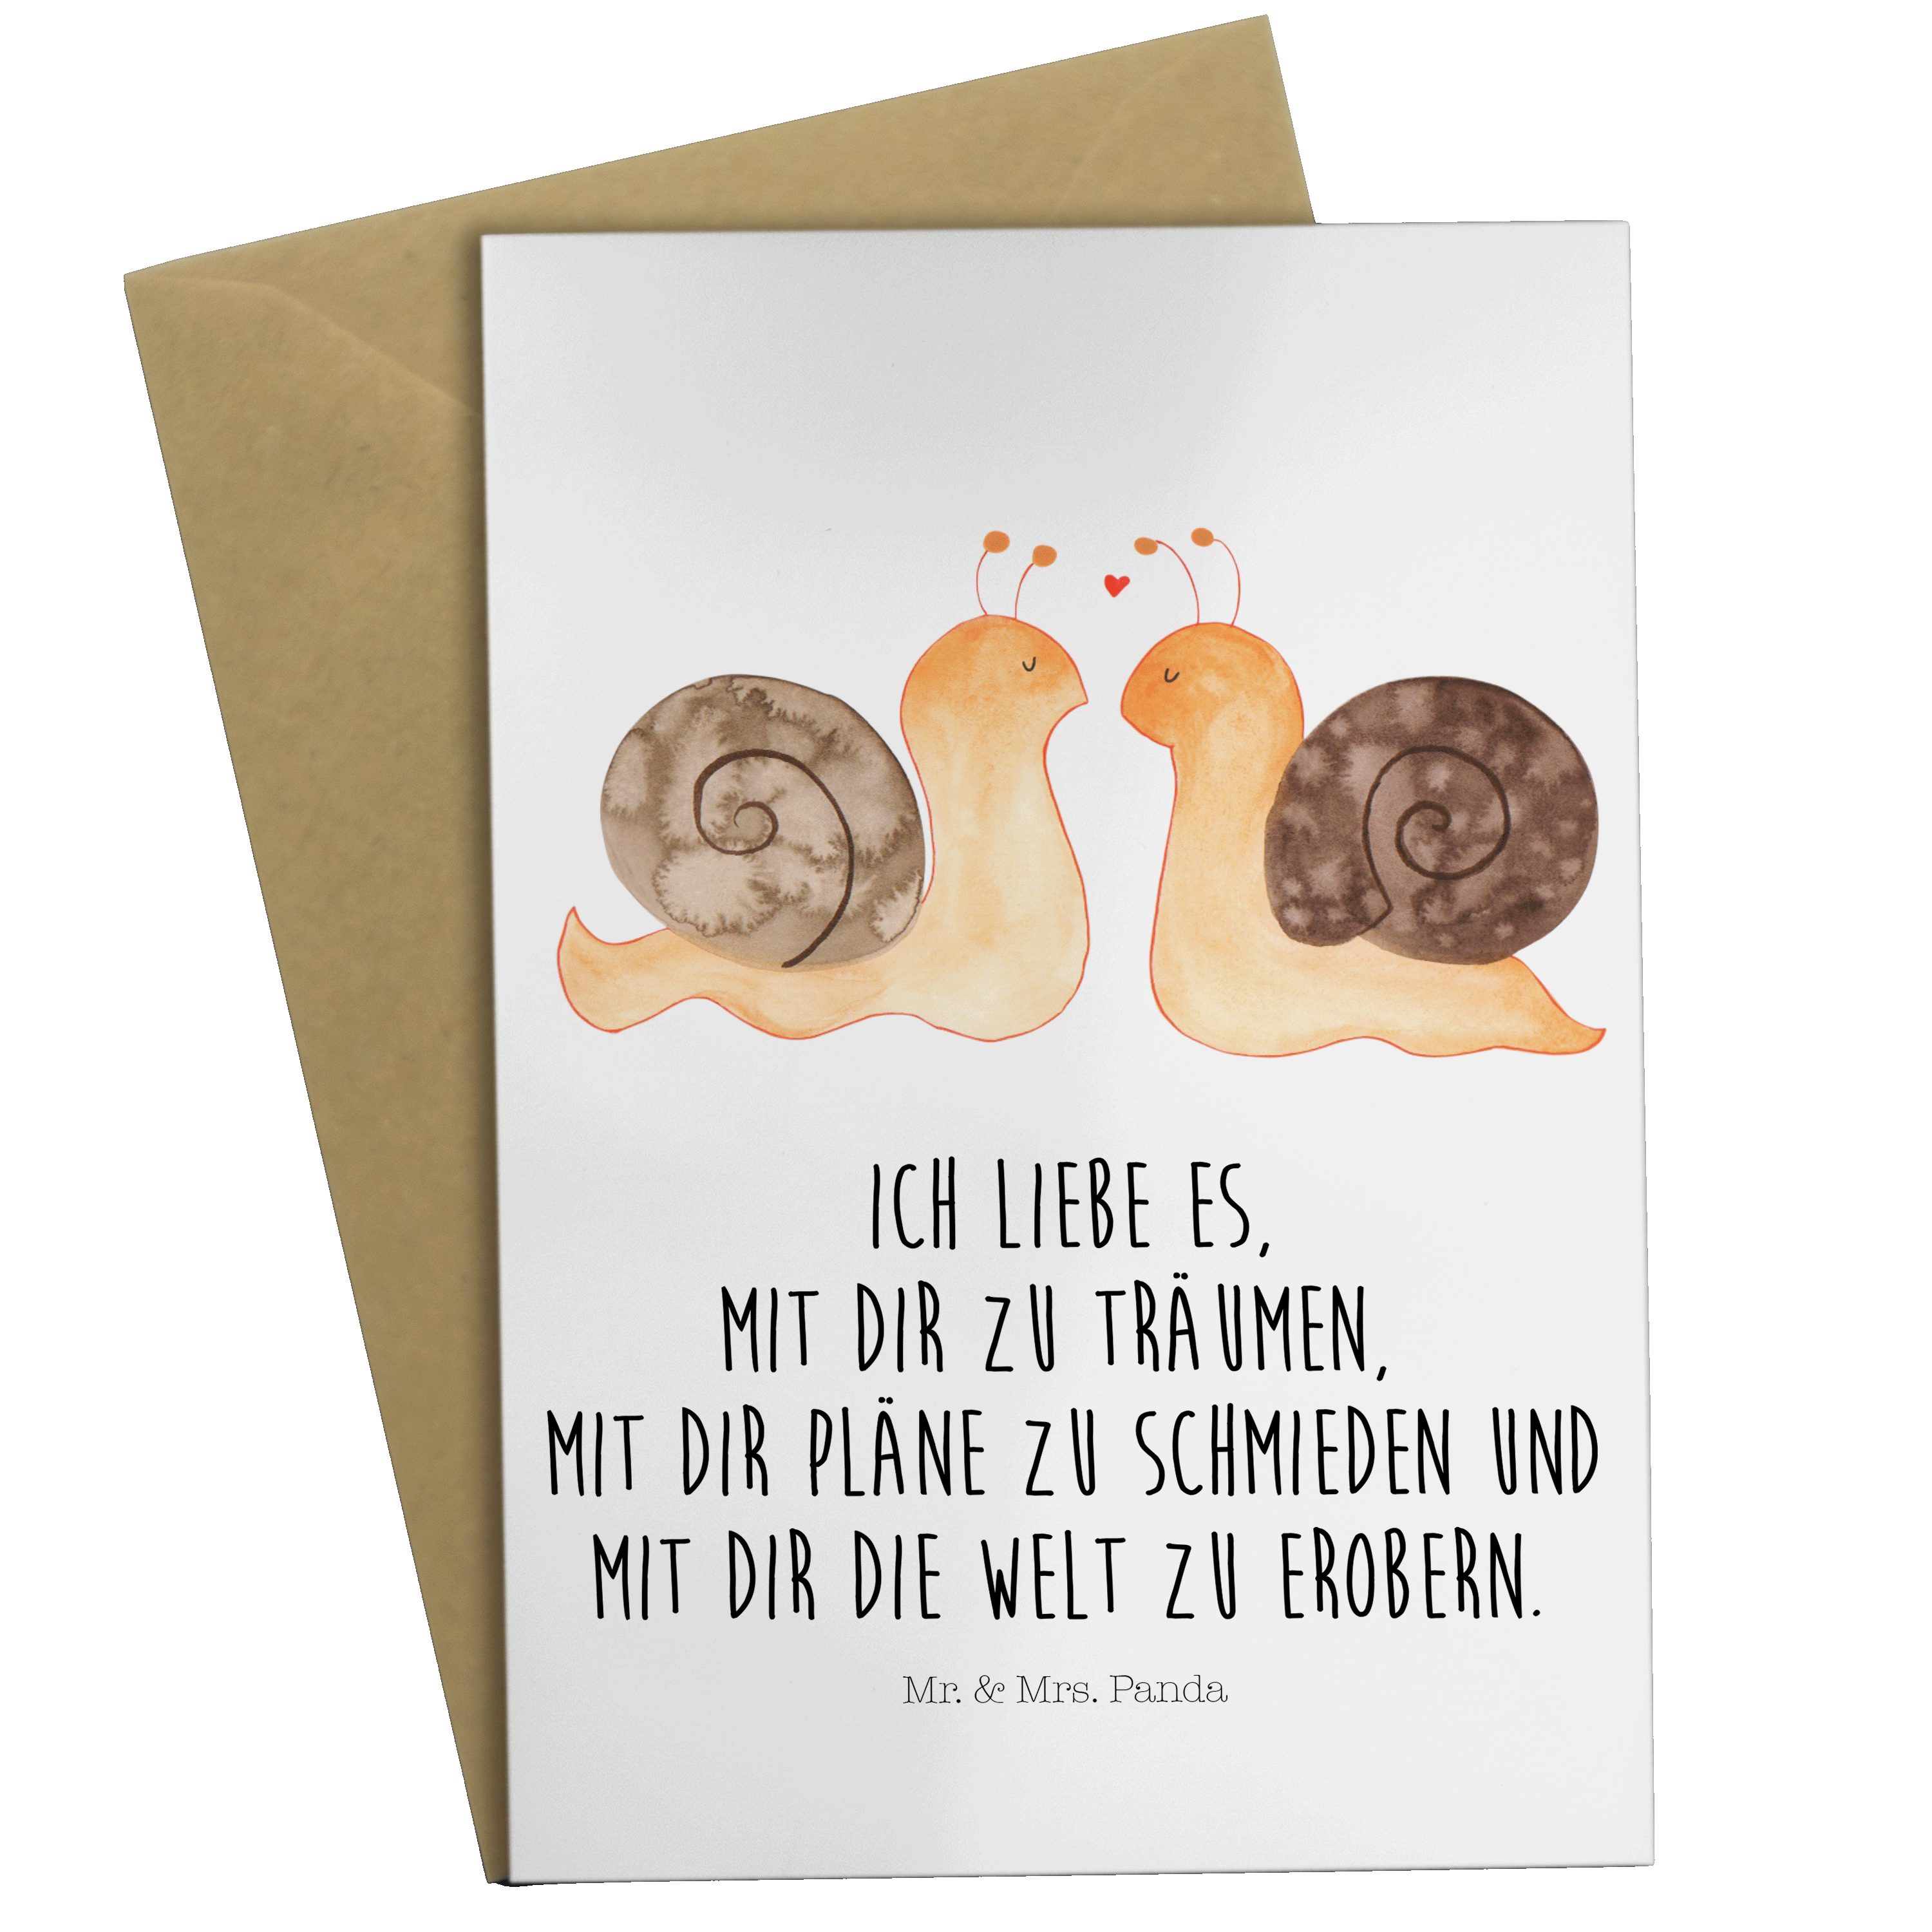 Mr. & Mrs. Panda Schnecken - Weiß Grußkarte Verlobung, zufried Hochzeitskarte, Liebe - Geschenk